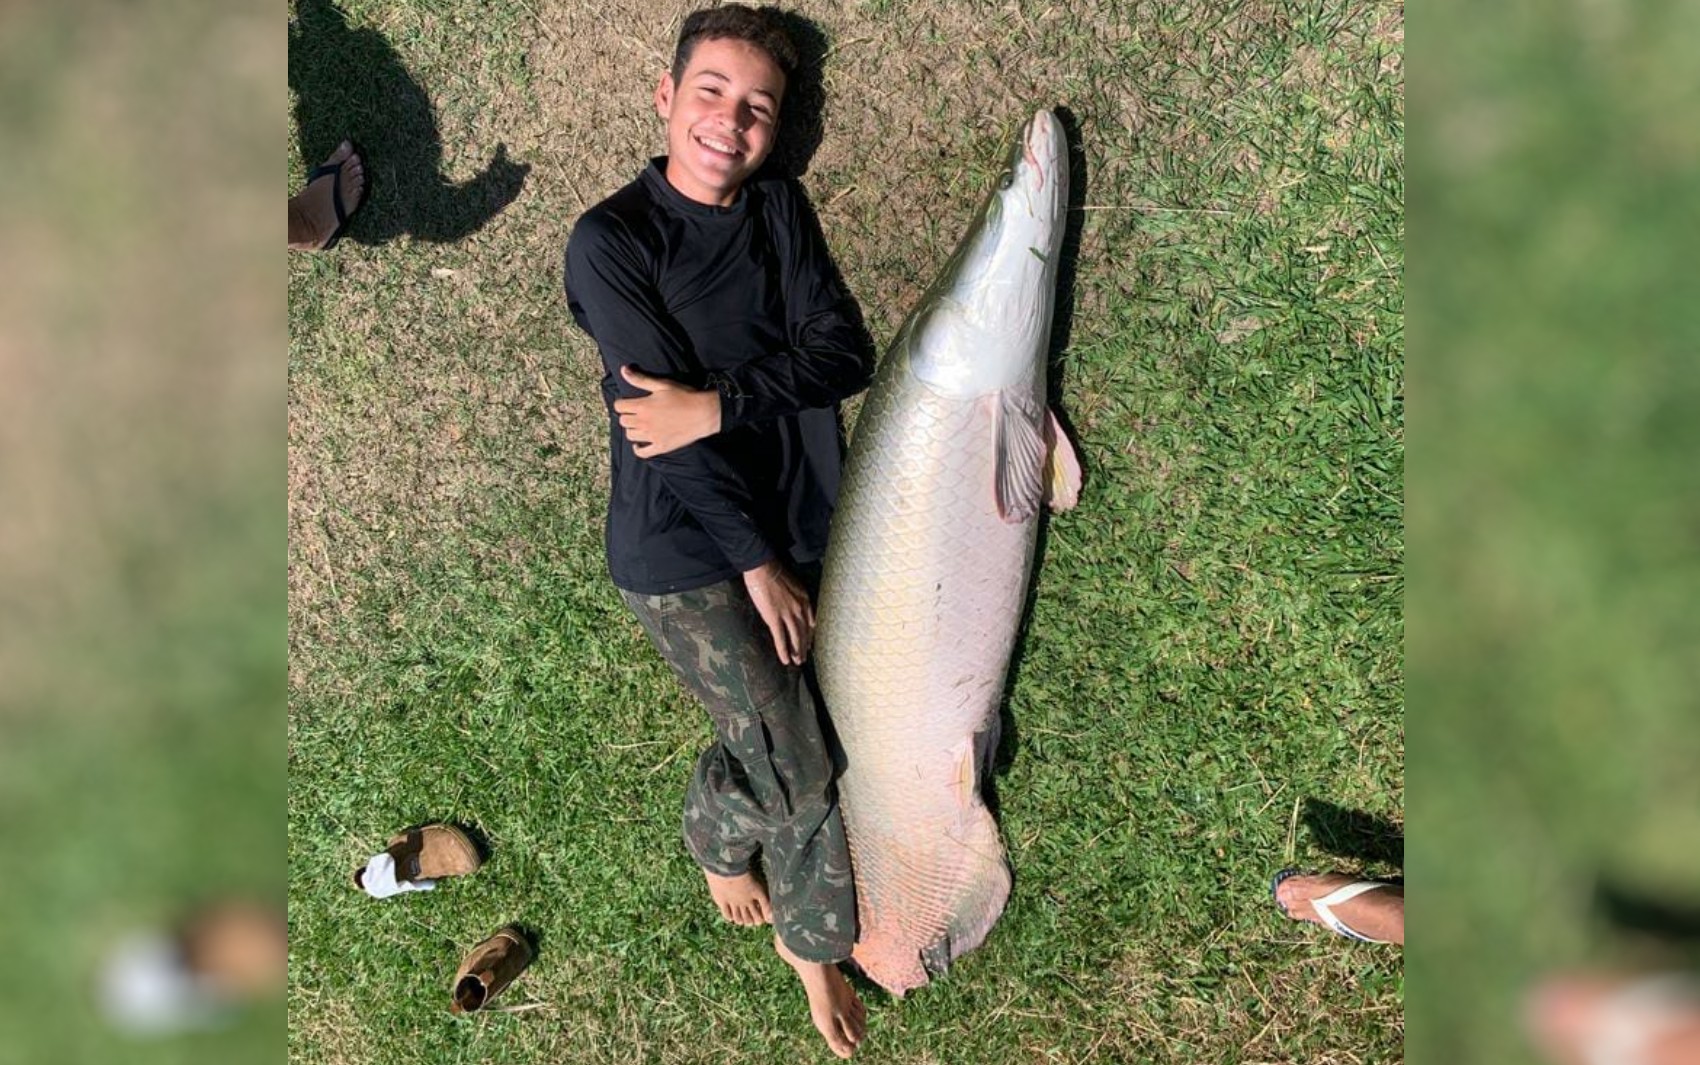 Adolescente de 13 anos pesca pirarucu quase do tamanho dele: 'Foi emocionante'